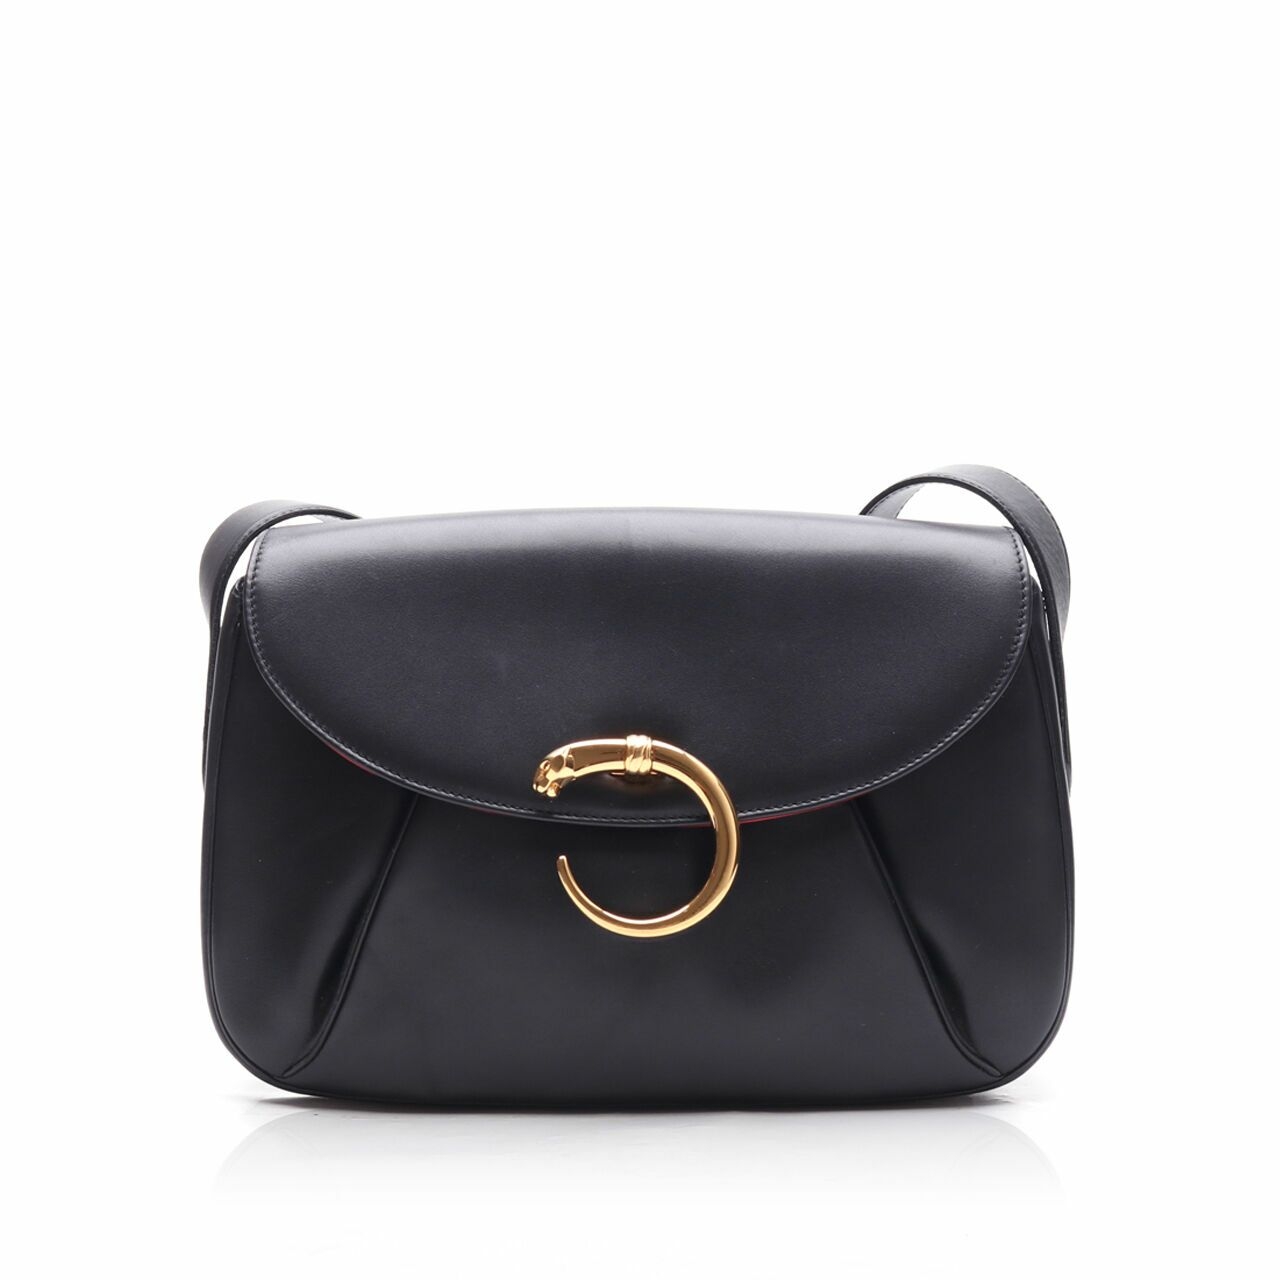 Cartier Black Leather Sling Bag	